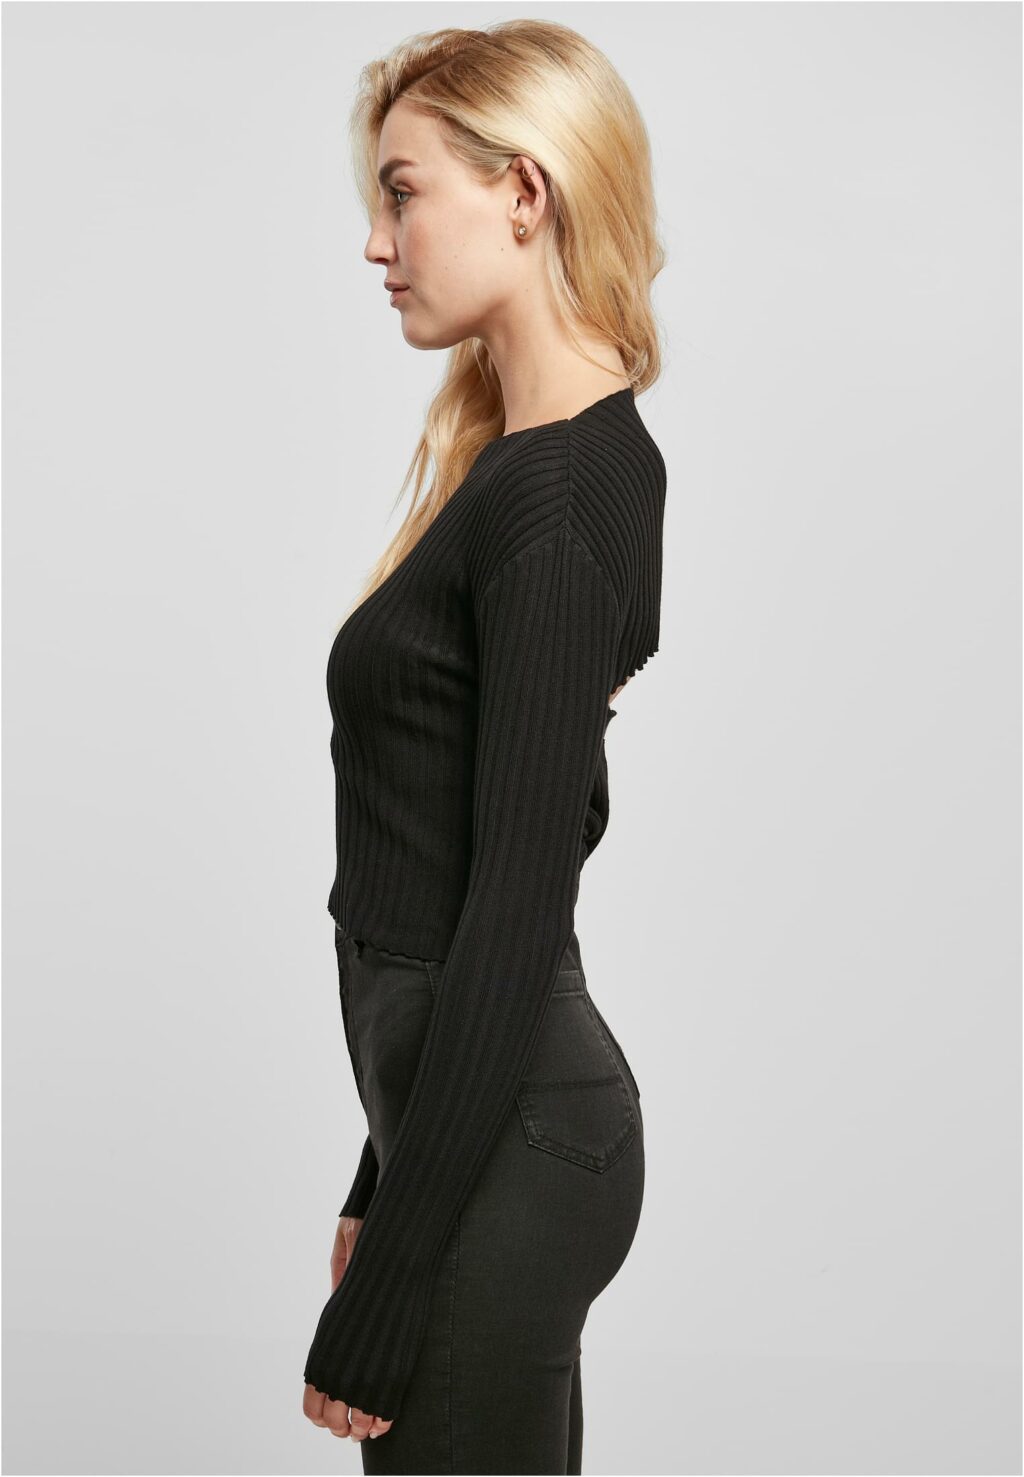 Urban Classics Ladies Short Rib Knit Twisted Back Sweater black TB5442